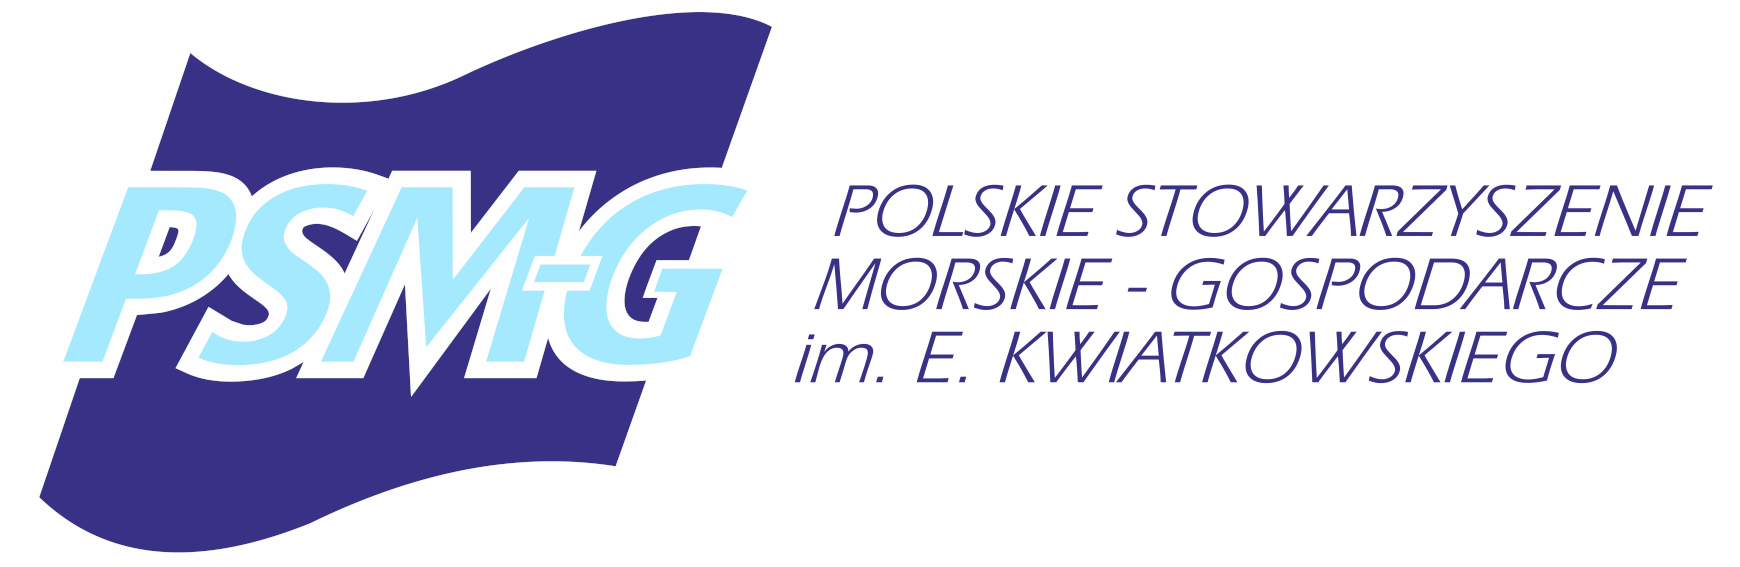 Polskie Stowarzyszenie Morskie-Gospodarcze im. E. Kwiatkowskiego